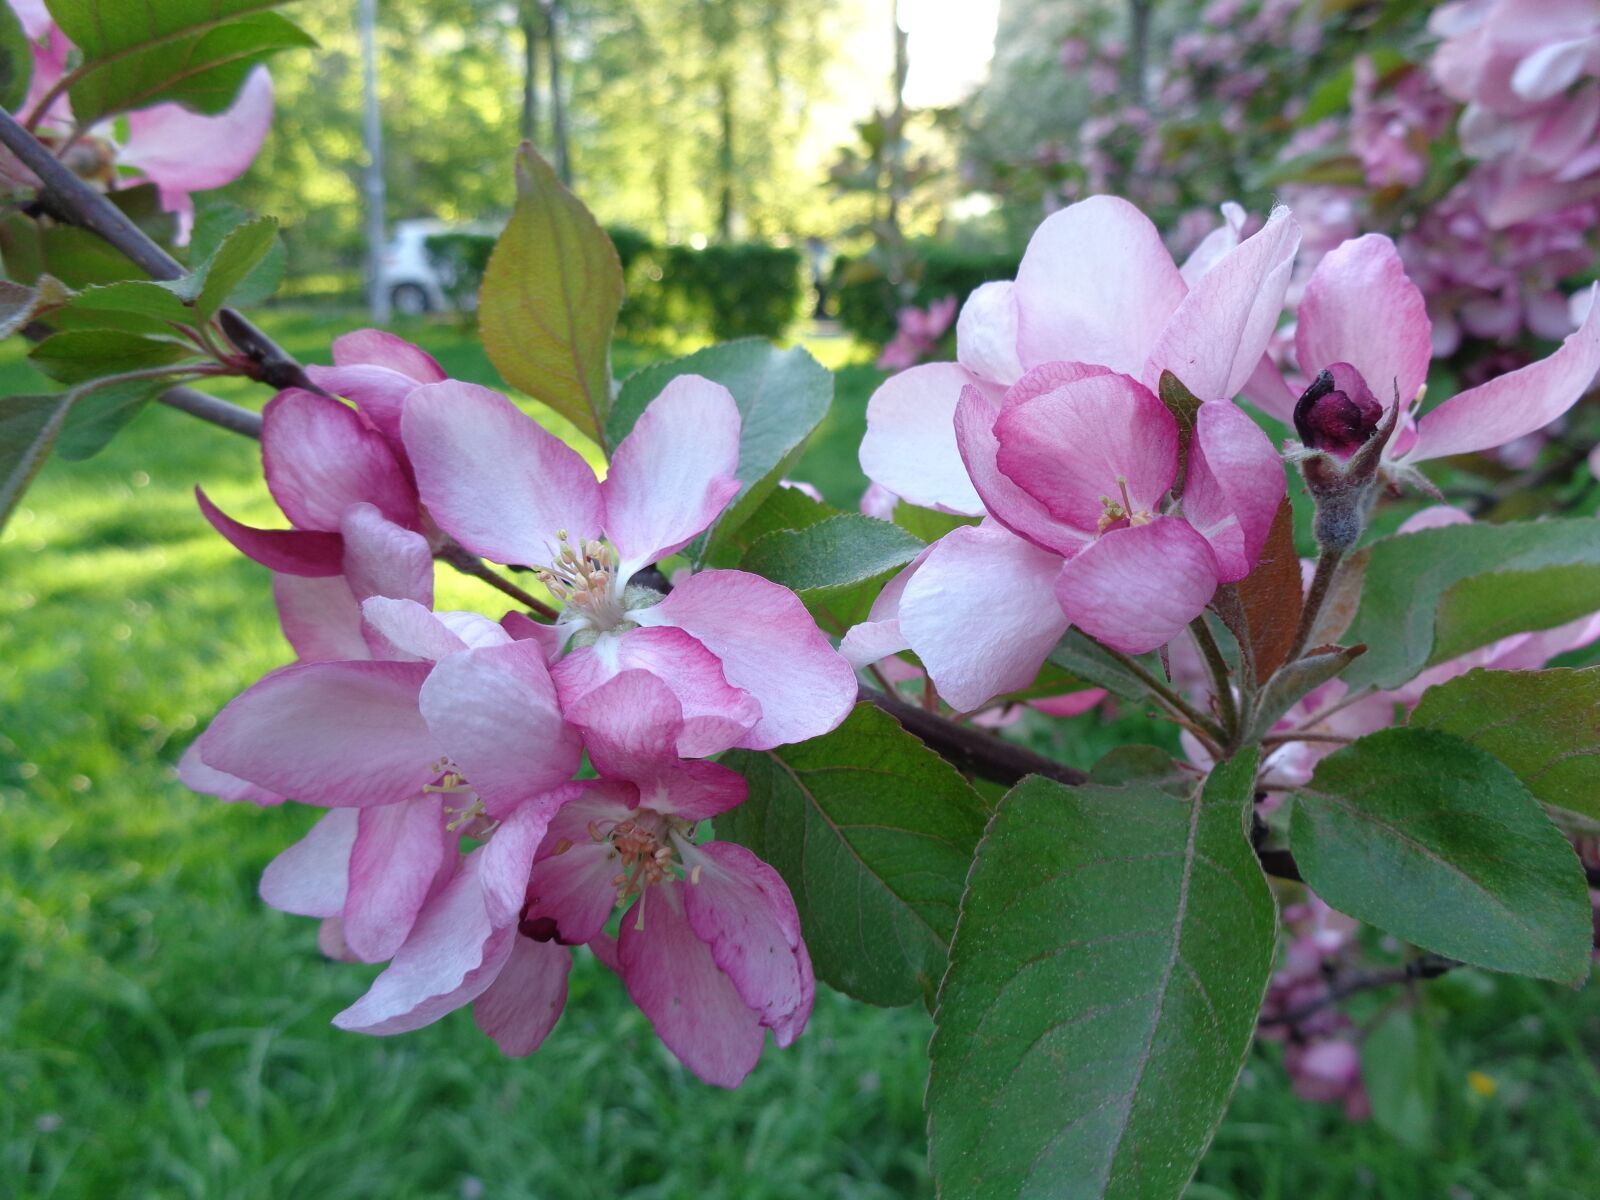 Sony Cyber-shot DSC-W730 sample photo. Apple flowers, apple tree photography